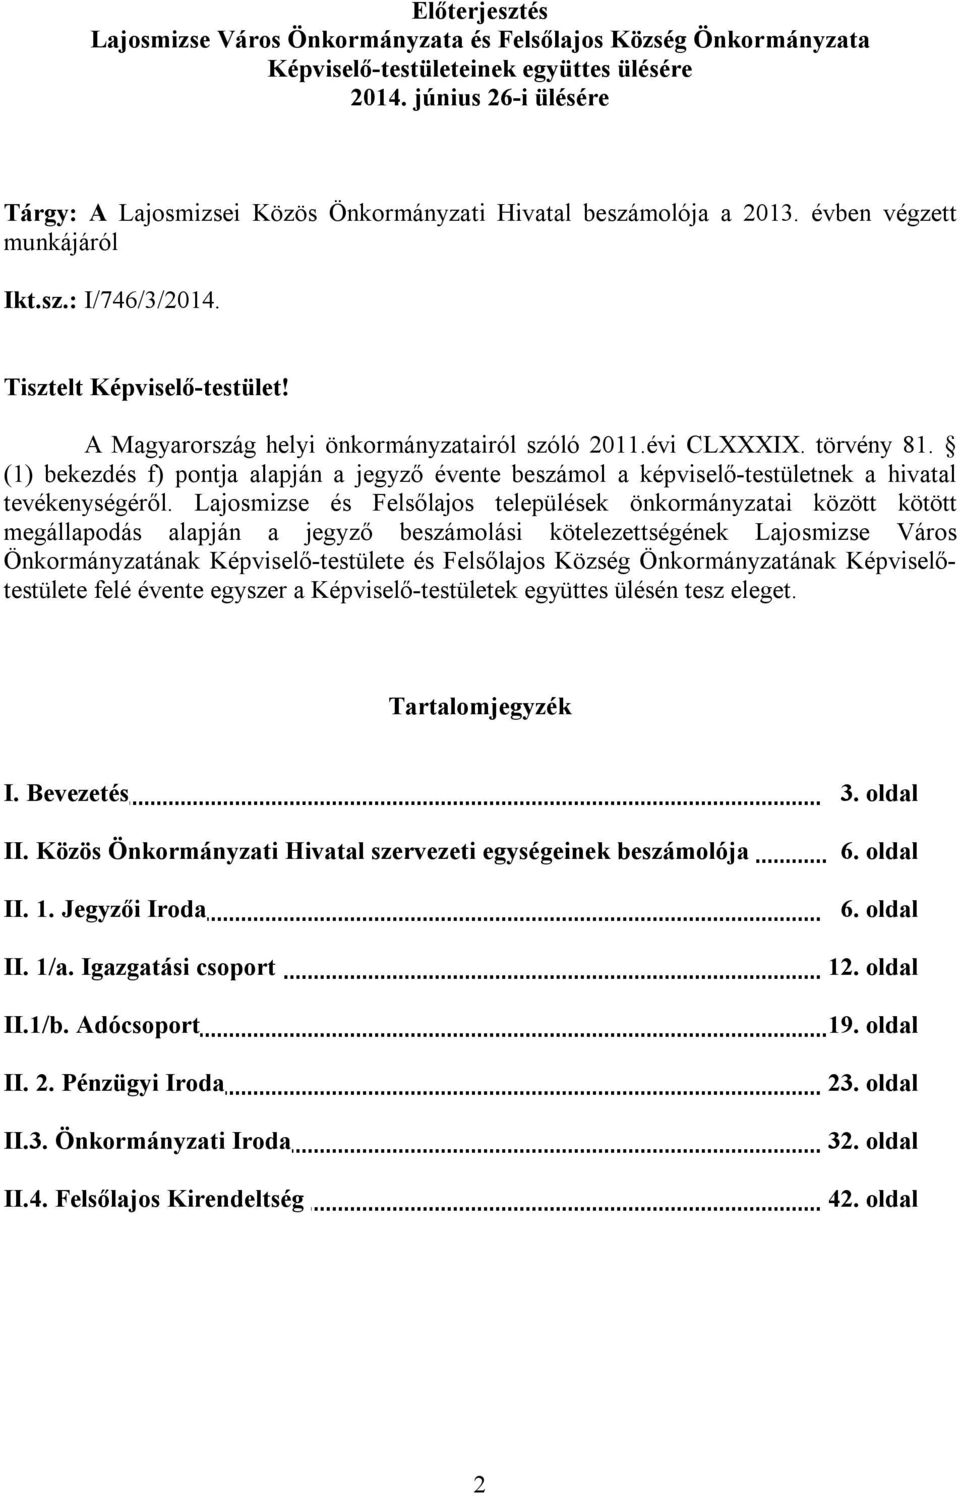 A Magyarország helyi önkormányzatairól szóló 2011.évi CLXXXIX. törvény 81. (1) bekezdés f) pontja alapján a jegyző évente beszámol a képviselő-testületnek a hivatal tevékenységéről.